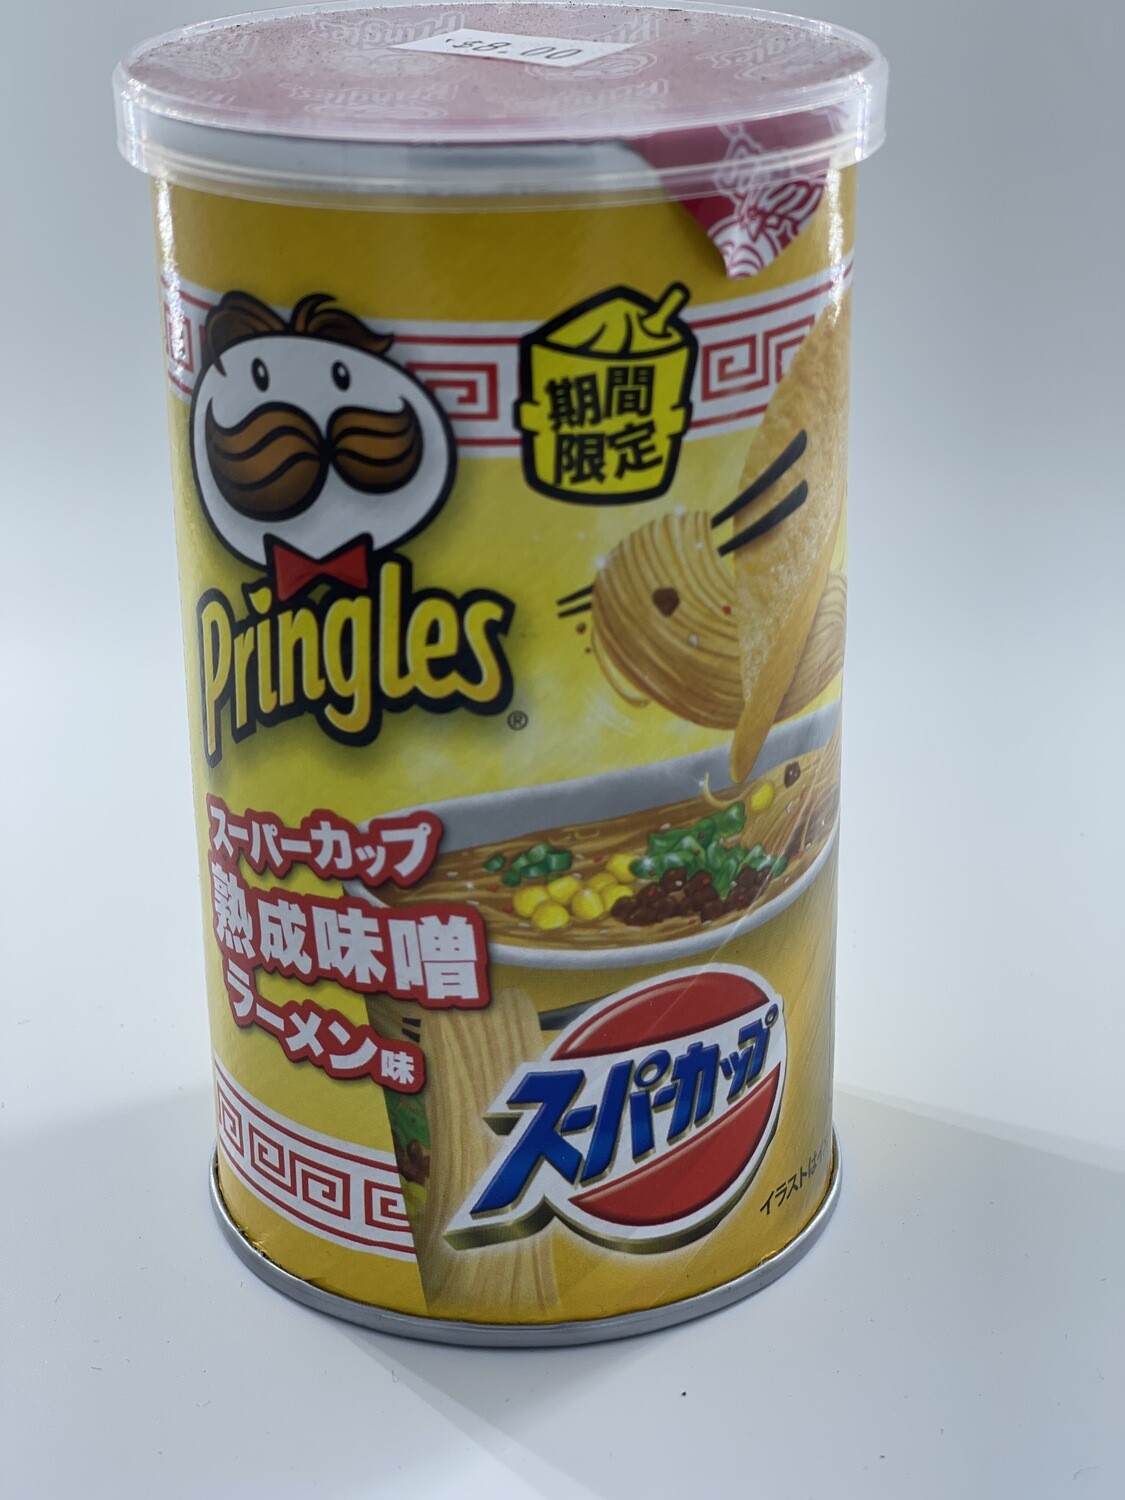 Pringles Miso